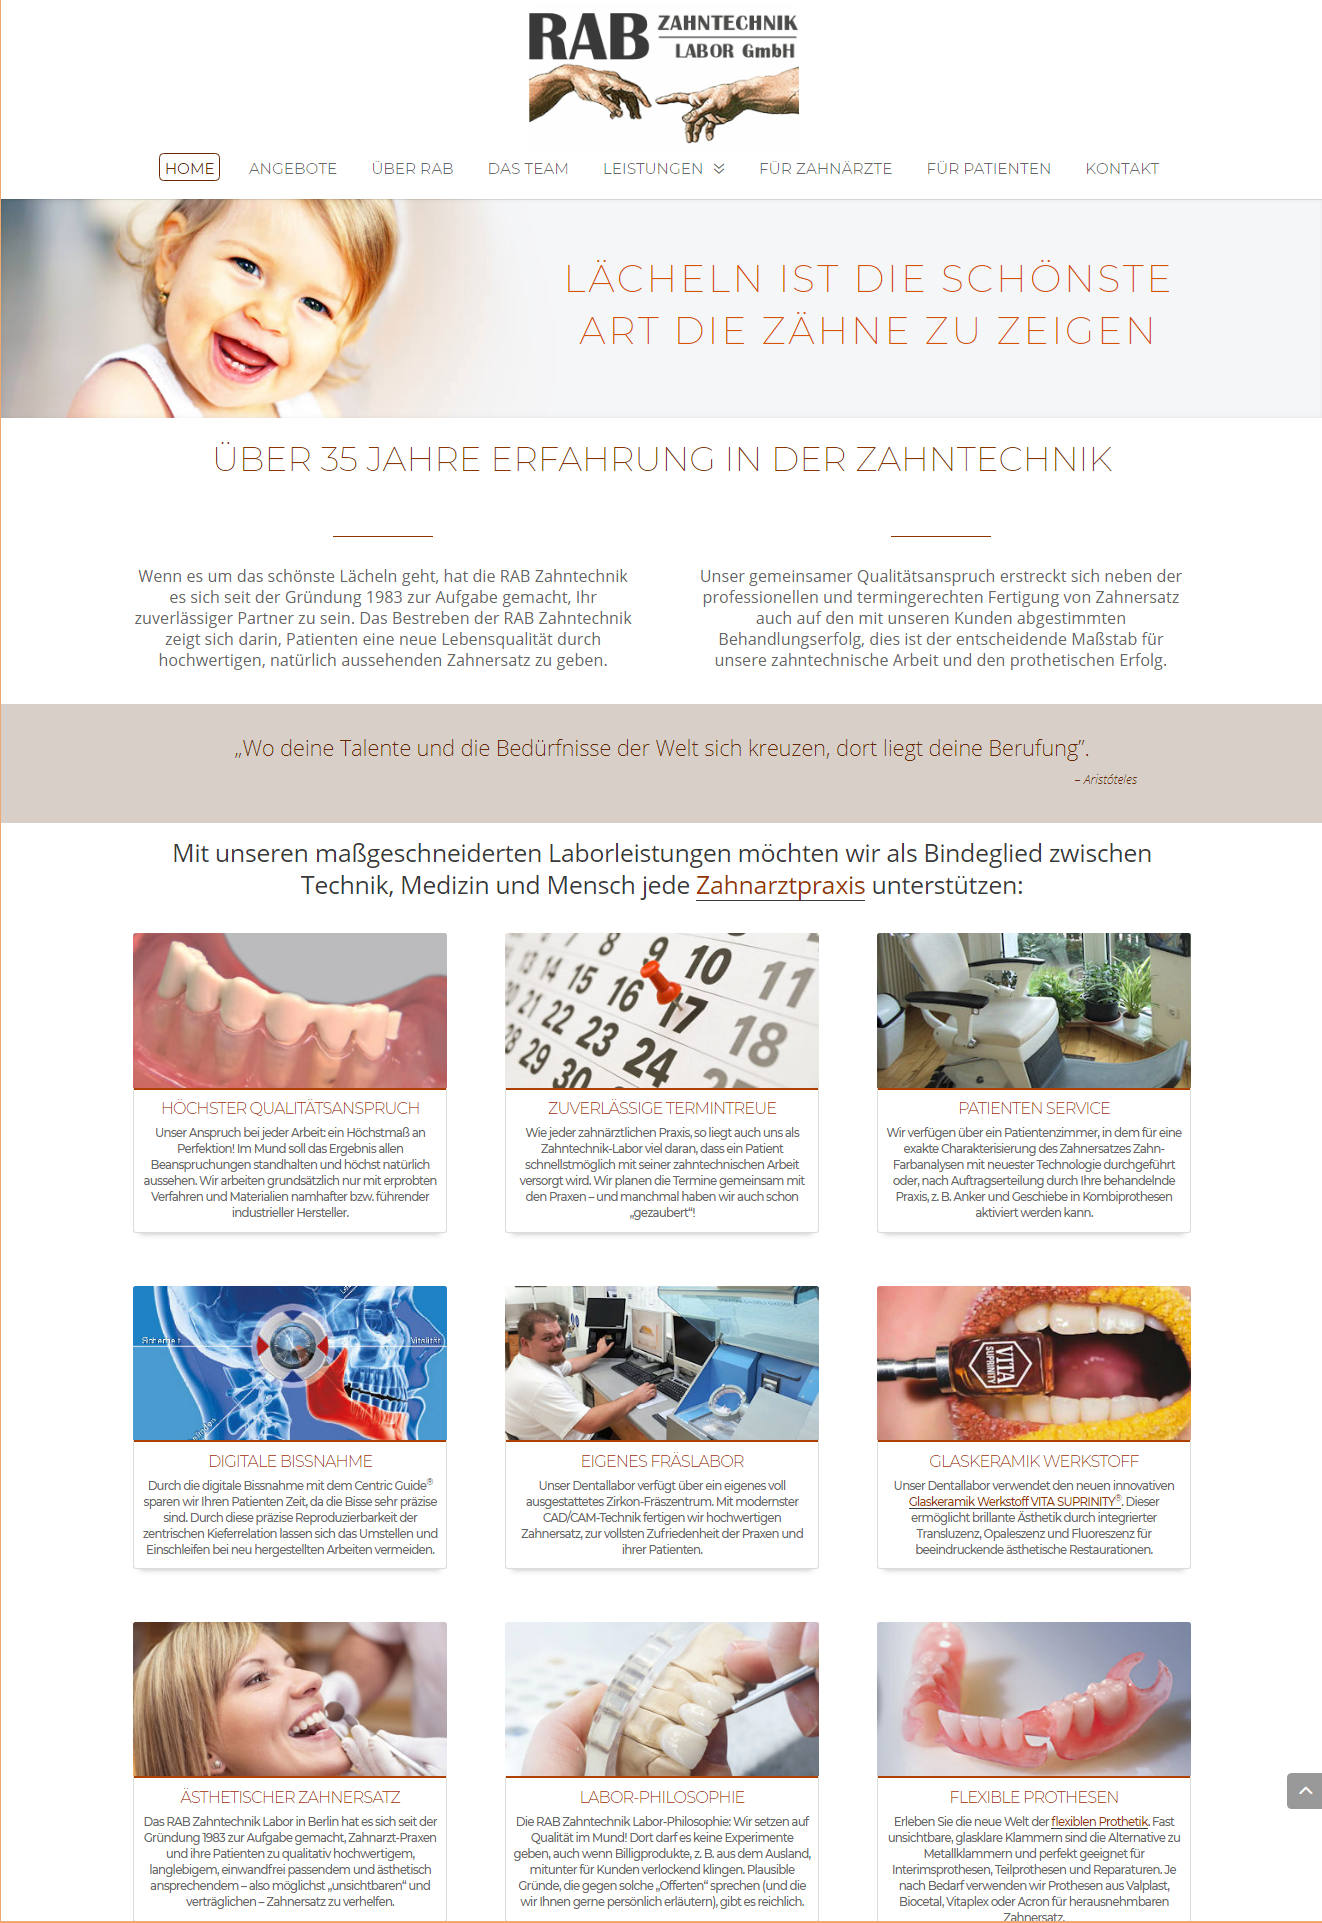 RAB Zahntechnik Labor Website moderne Website erstellt von Berliner Website Agentur